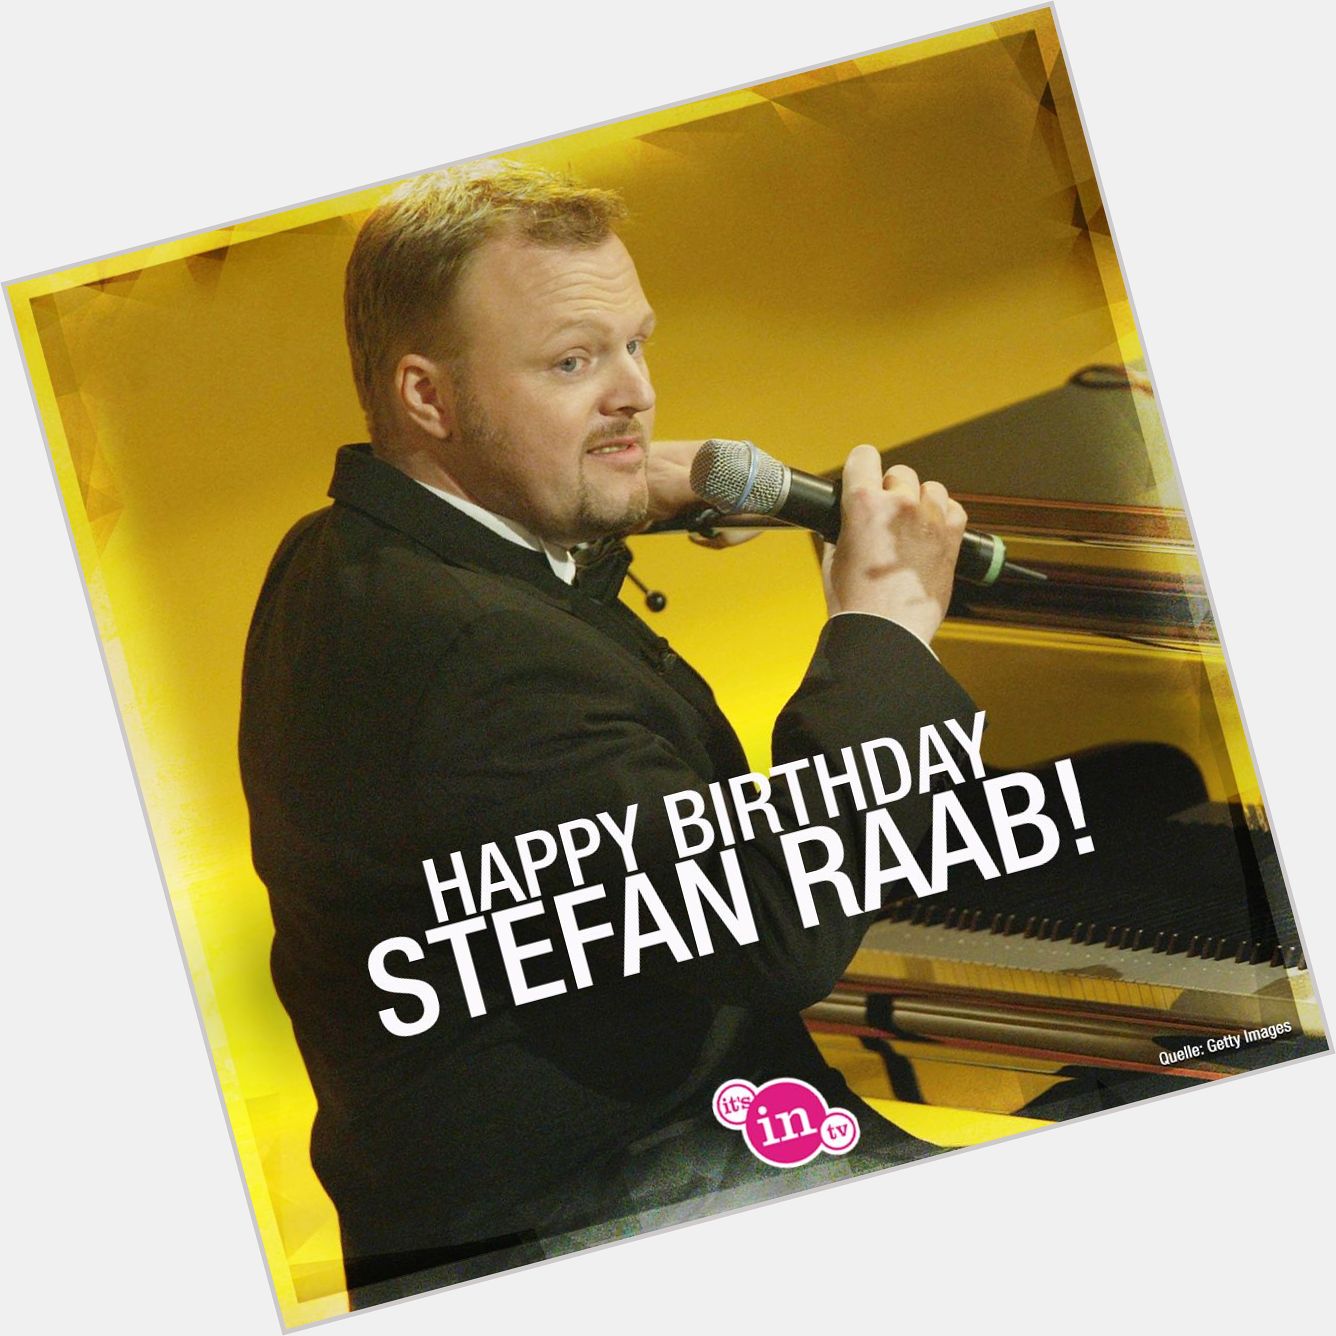 Unser heutiges Geburtstagskind ist Stefan Raab! Happy Birthday! Hoch soll er leben!  